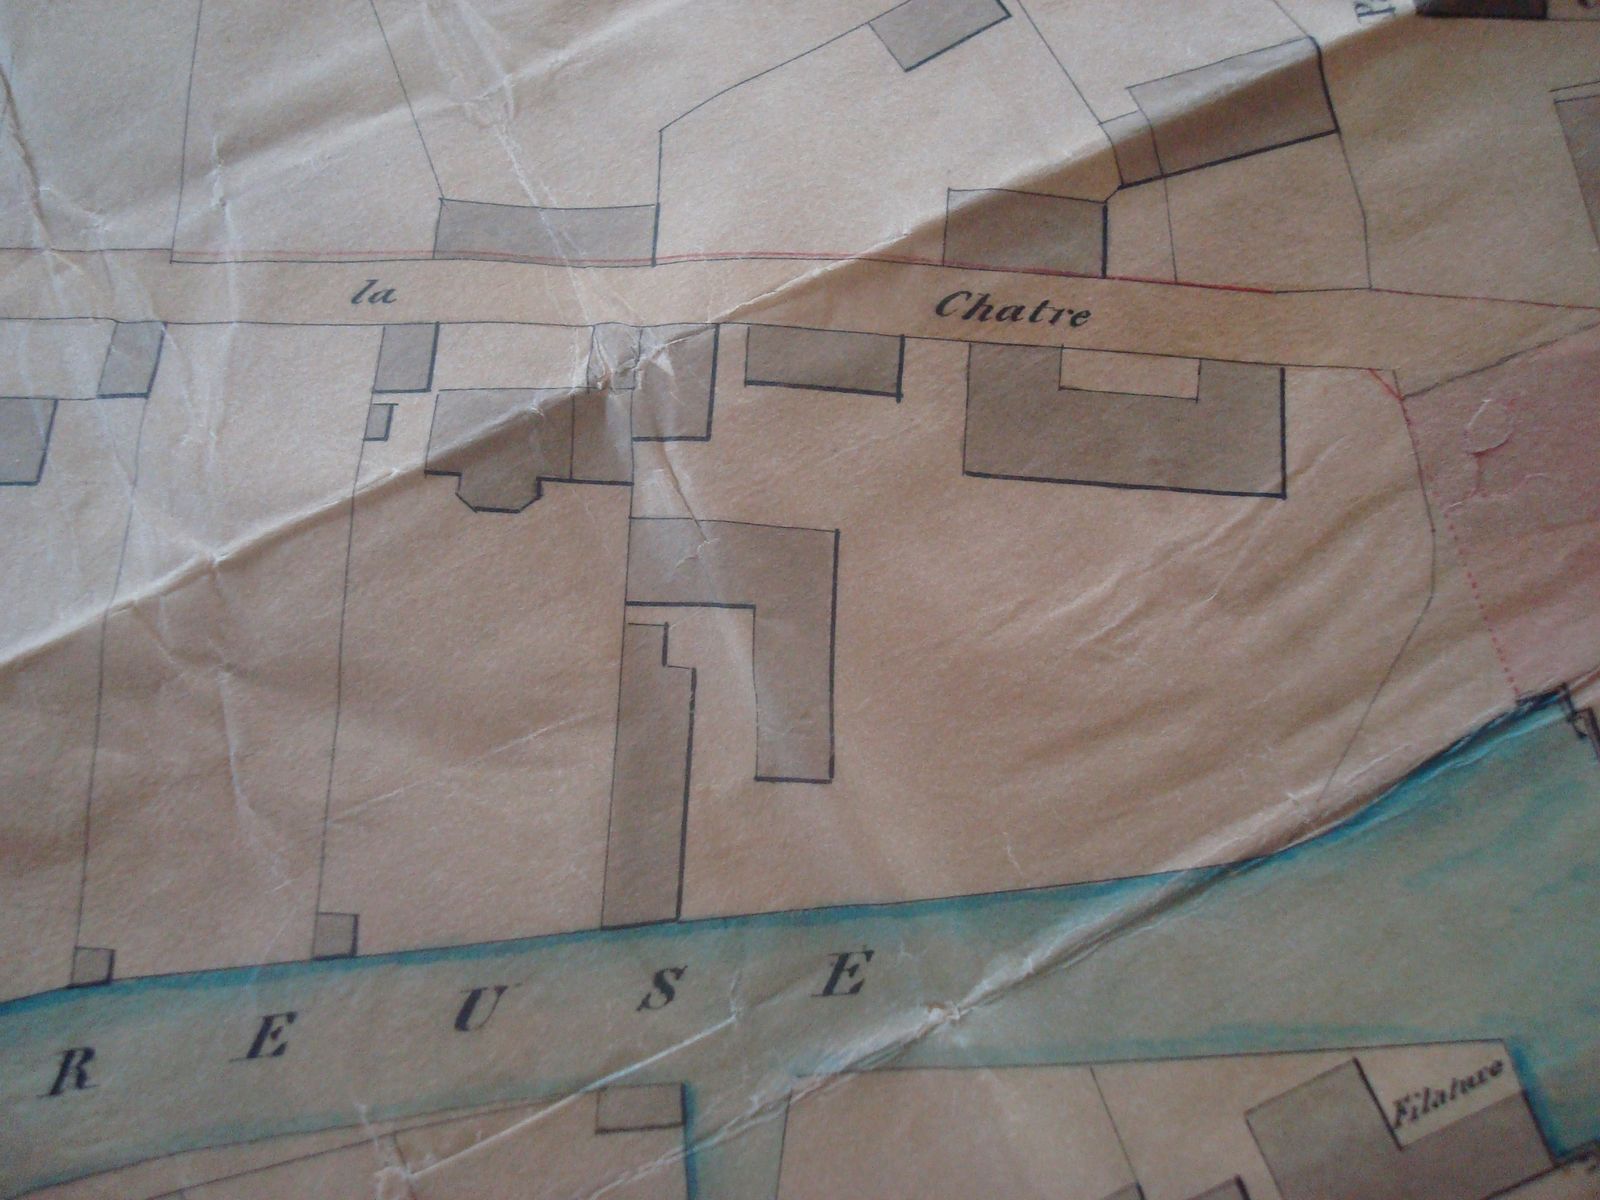 Extrait du plan de la ville d'Aubusson et de ses faubourgs dans la seconde moitié du 19e siècle, avec les bâtiments de la manufacture de tapis Sallandrouze de Lamornaix (Archives Nationales)